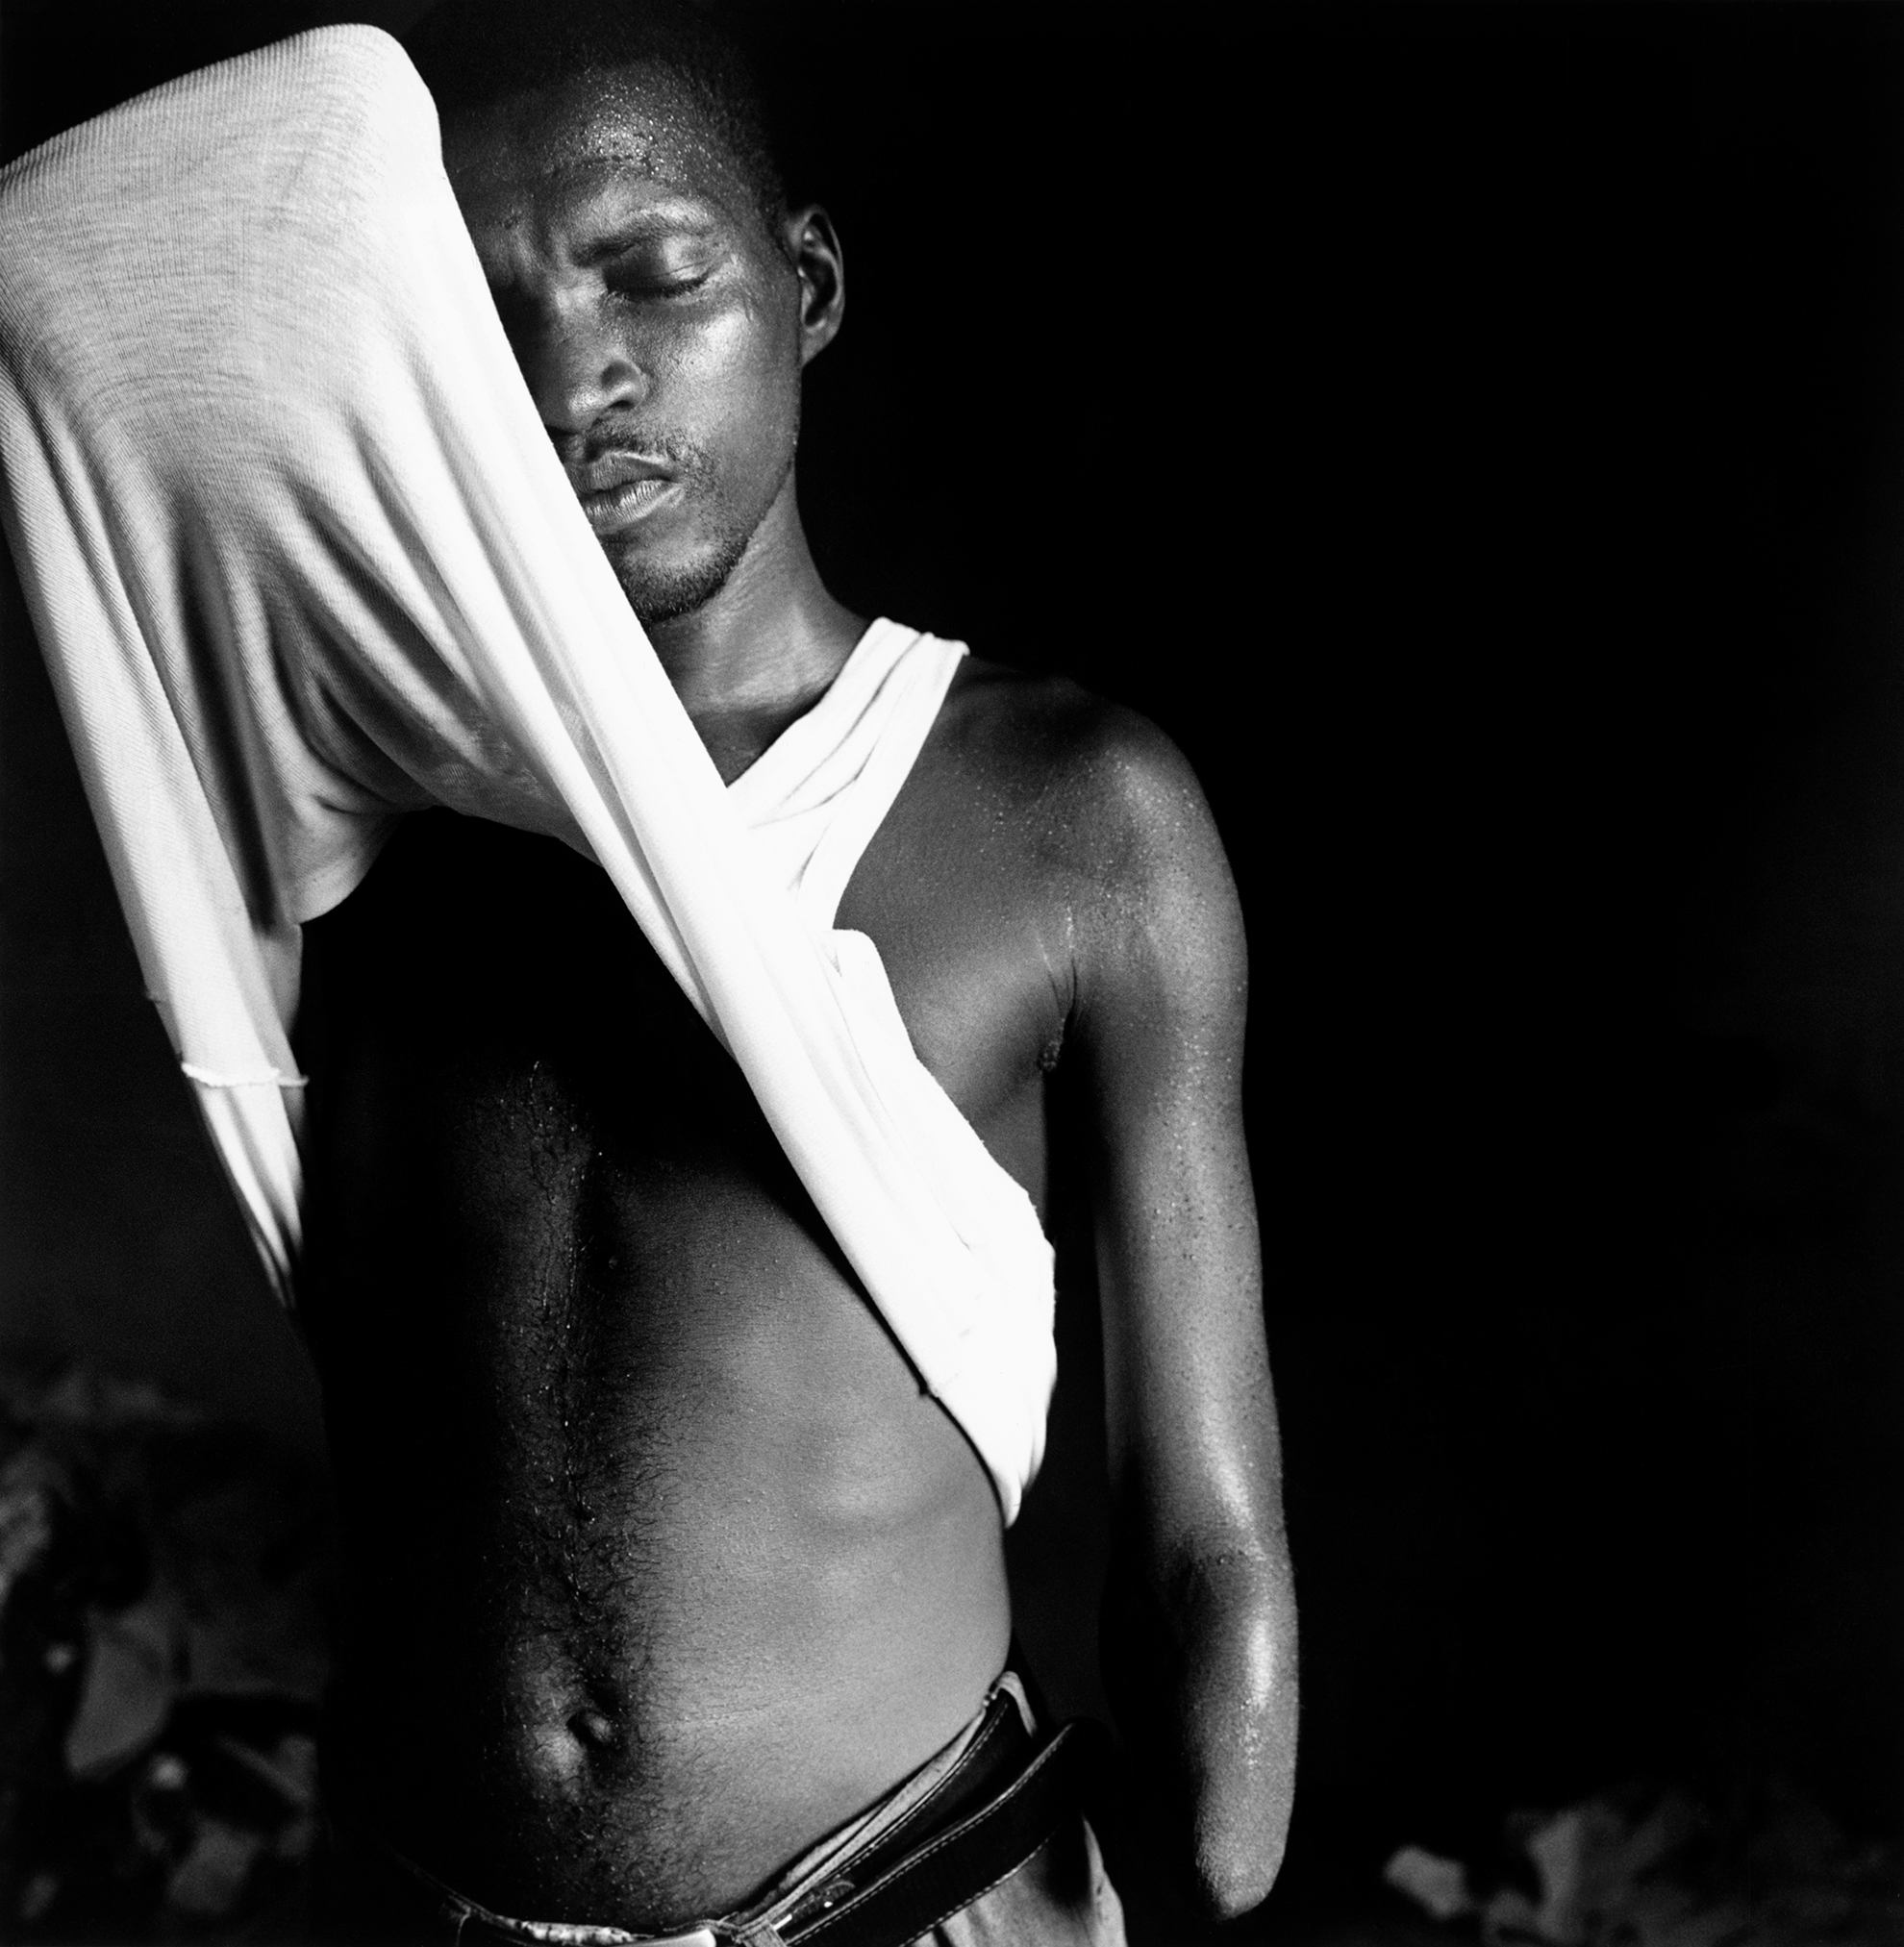 Abu Bakarr Kargbo, de 31 años, mutilado por el Frente Revolucionario Unido, el 20 de enero de 1999 cuando atacaron la parte Este de la capital, Freetown. A diferencia de otras víctimas, no le dieron la posibilidad de elegir entre manga larga o manga corta, perder el brazo o la mano. En la actualidad vive con su esposa y sus tres hijos en un campo para mutilados de guerra abandonado al noroeste de Freetown.